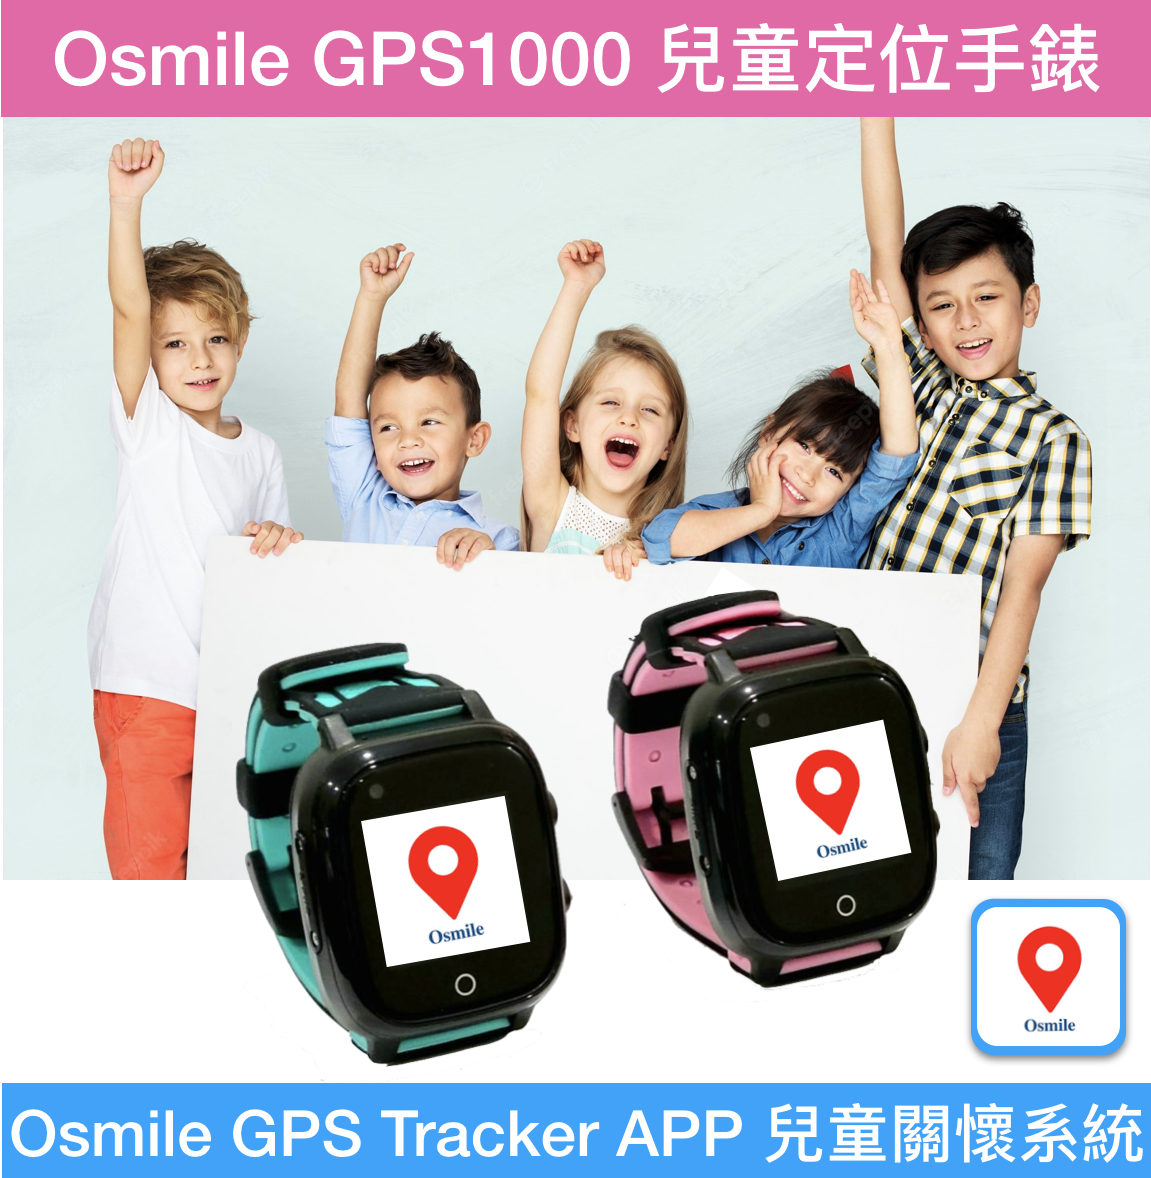 Osmile GPS1000 (L) 兒童安全健康管理手錶 (含定時開關機、體溫量測、生理量測、計步管理、跌倒警示、來電自動接聽、陌生來電拒接、手錶防丟、SOS緊急求援、GPS定位防走失、電子圍欄安全範圍設定、遠距安全管理、遠距生理量測與健康管理、視訊及語音通話)